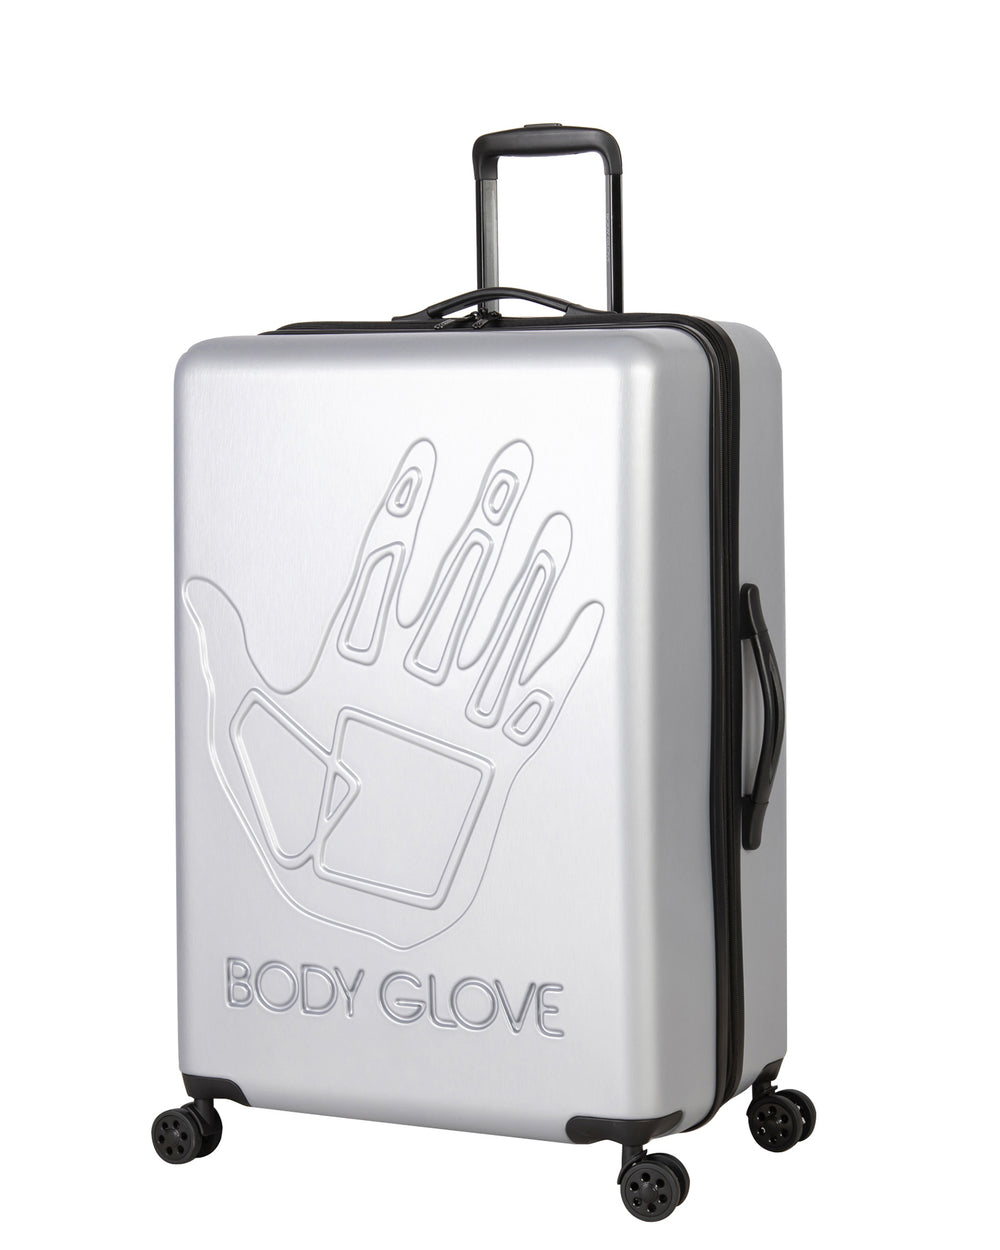 Redondo 3-Piece Hardside Luggage Set - Silver